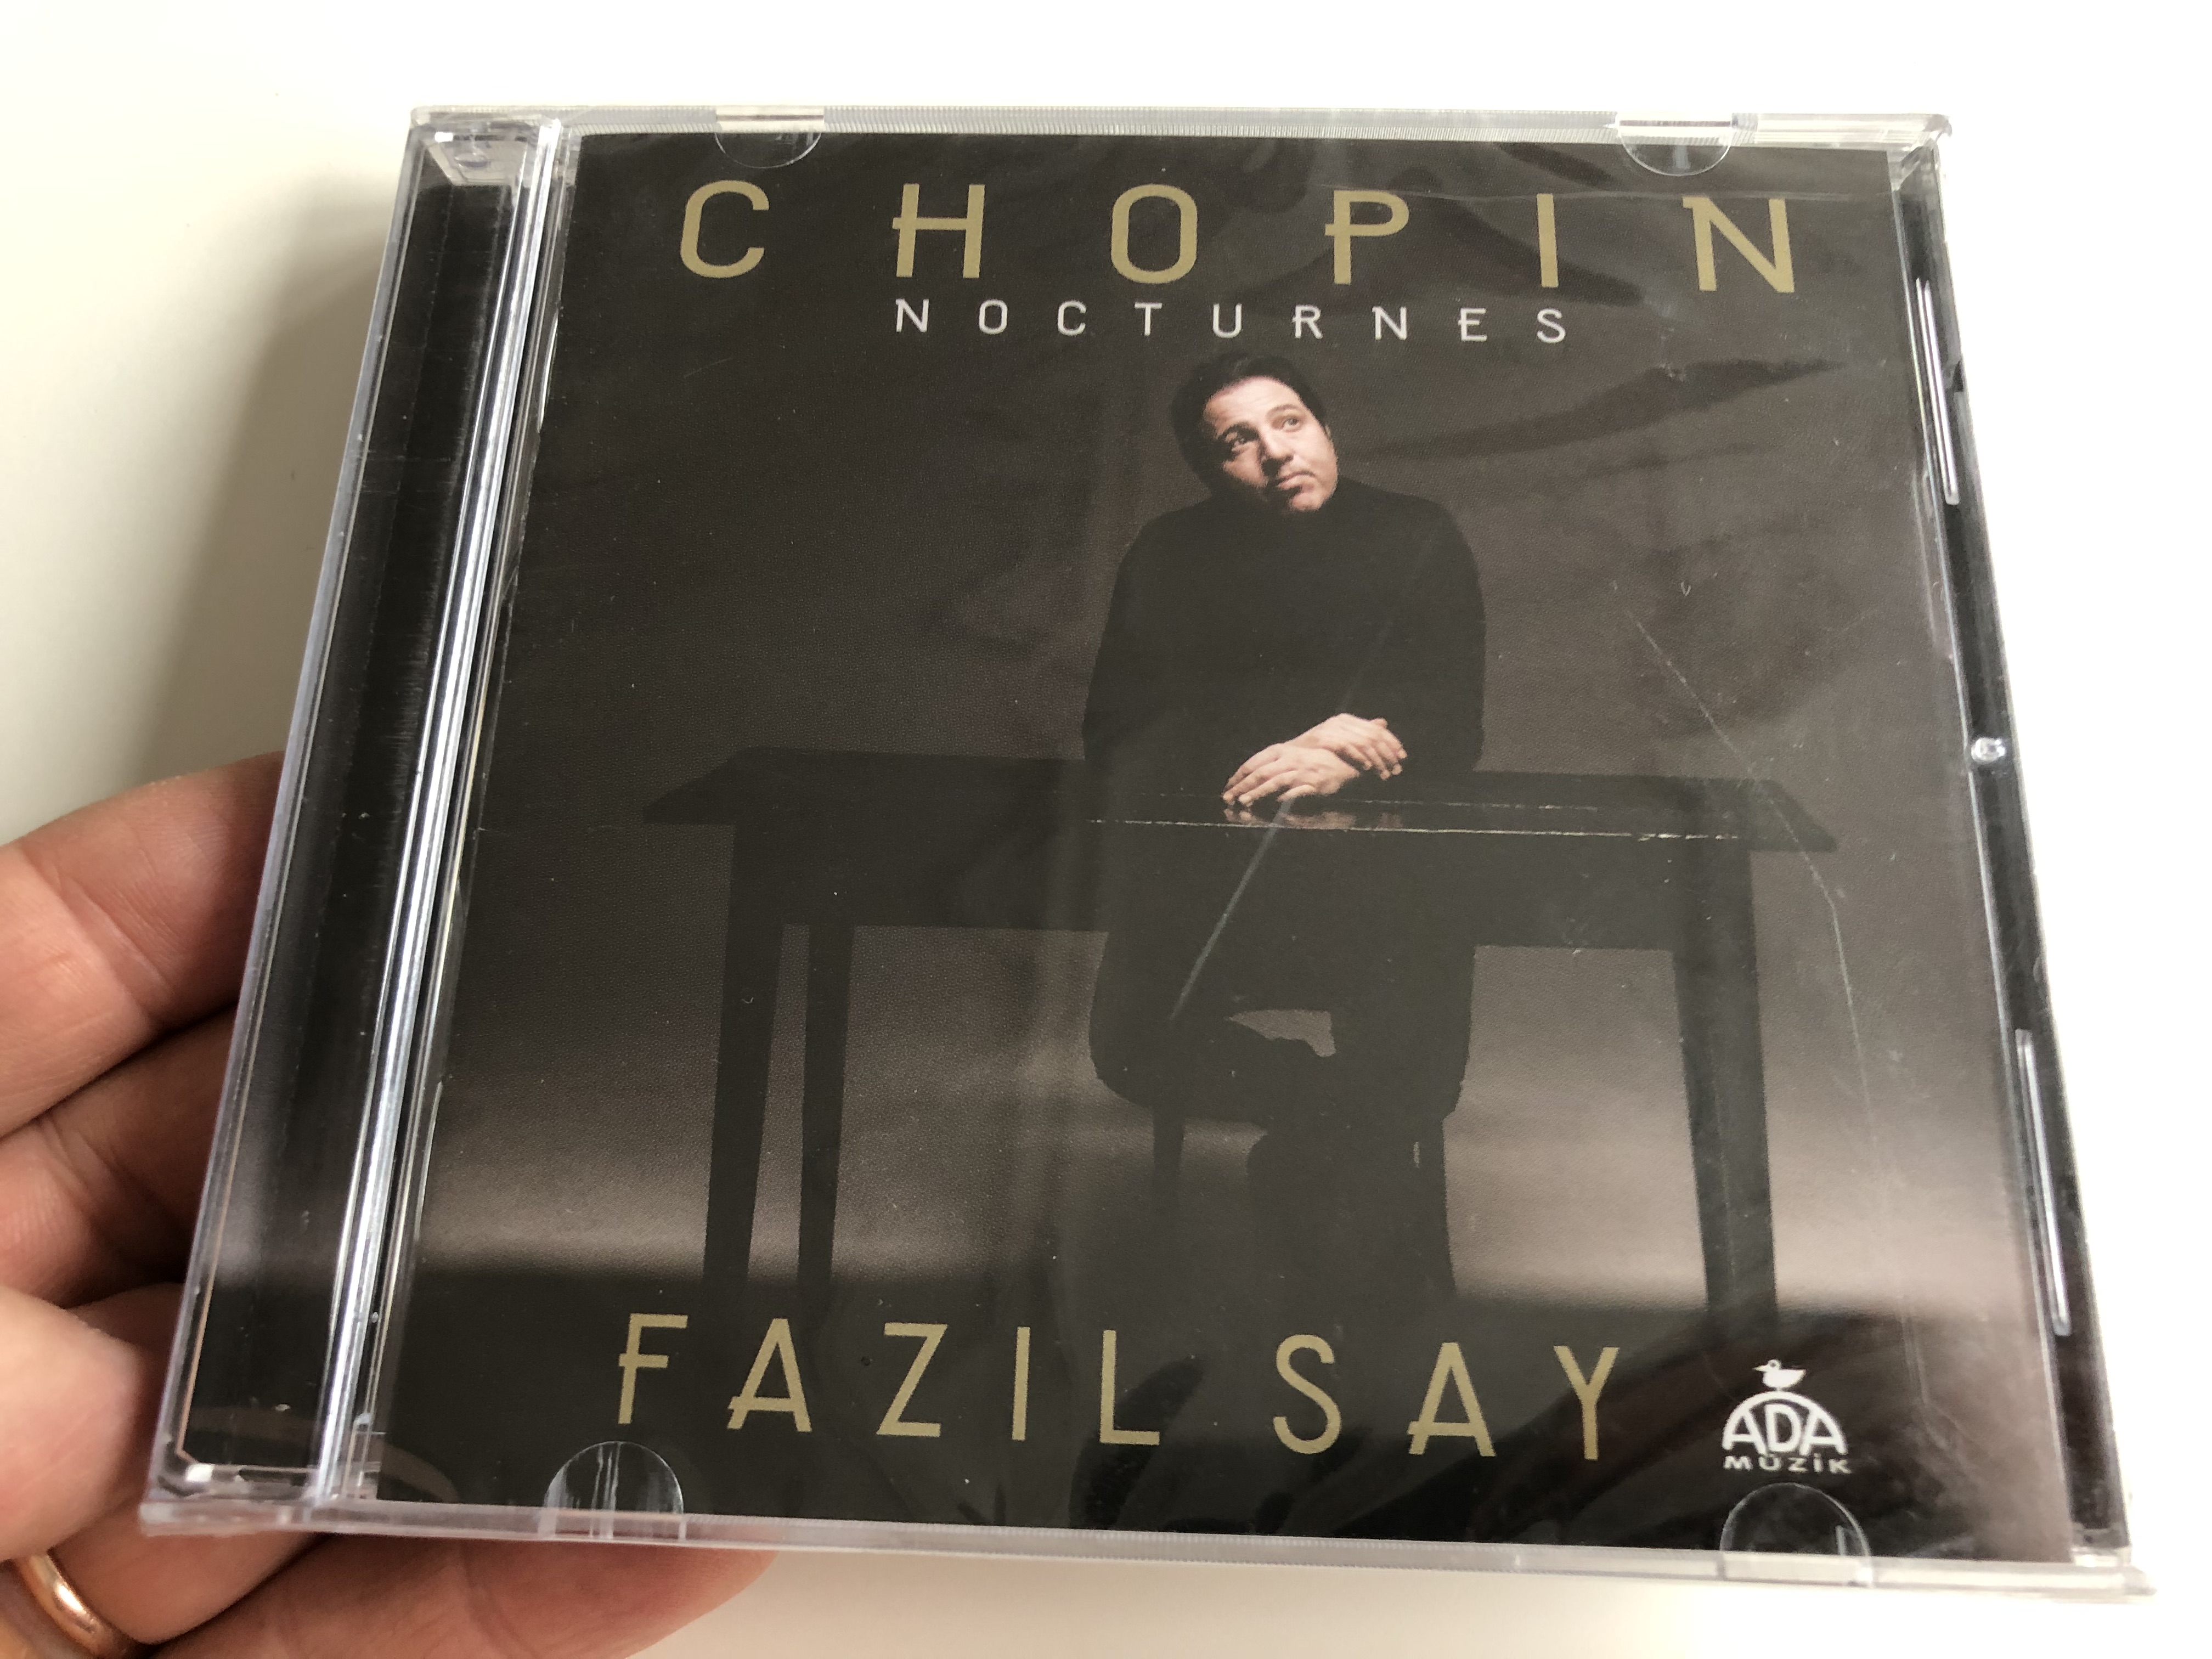 chopin-nocturnes-faz-l-say-turkish-cd-2018-2-.jpg